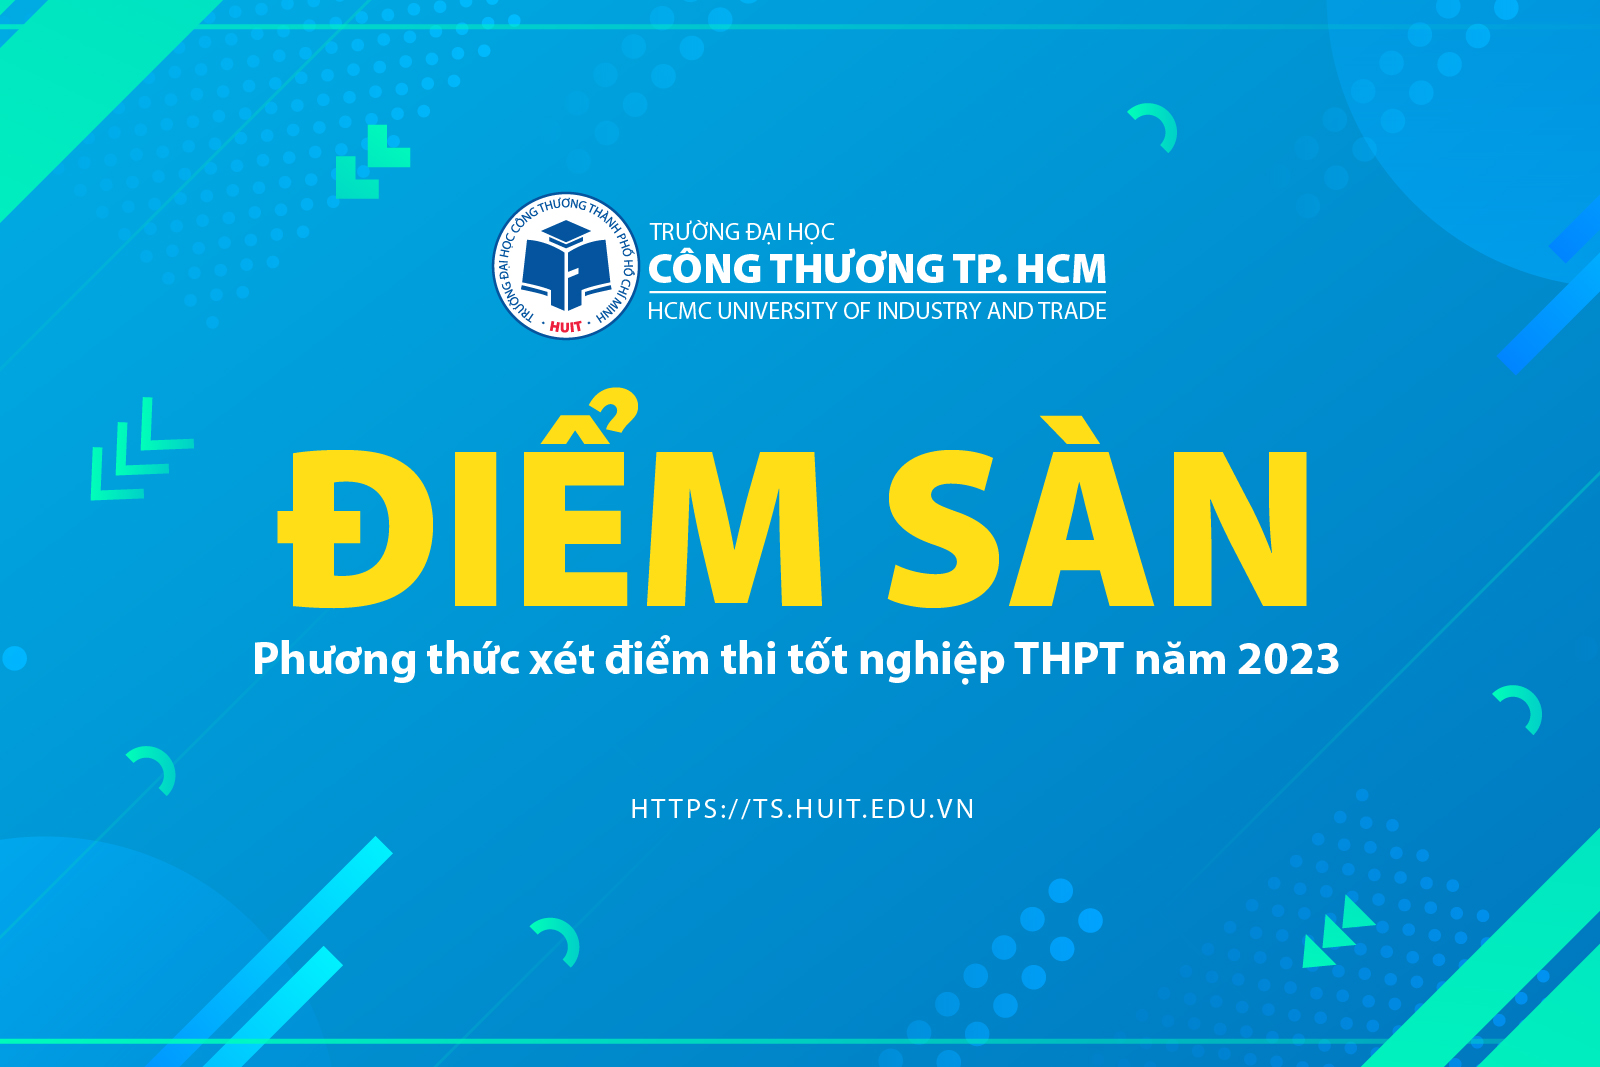 Trường Đại học Công Thương TP. HCM công bố điểm sàn phương thức xét điểm thi tốt nghiệp THPT